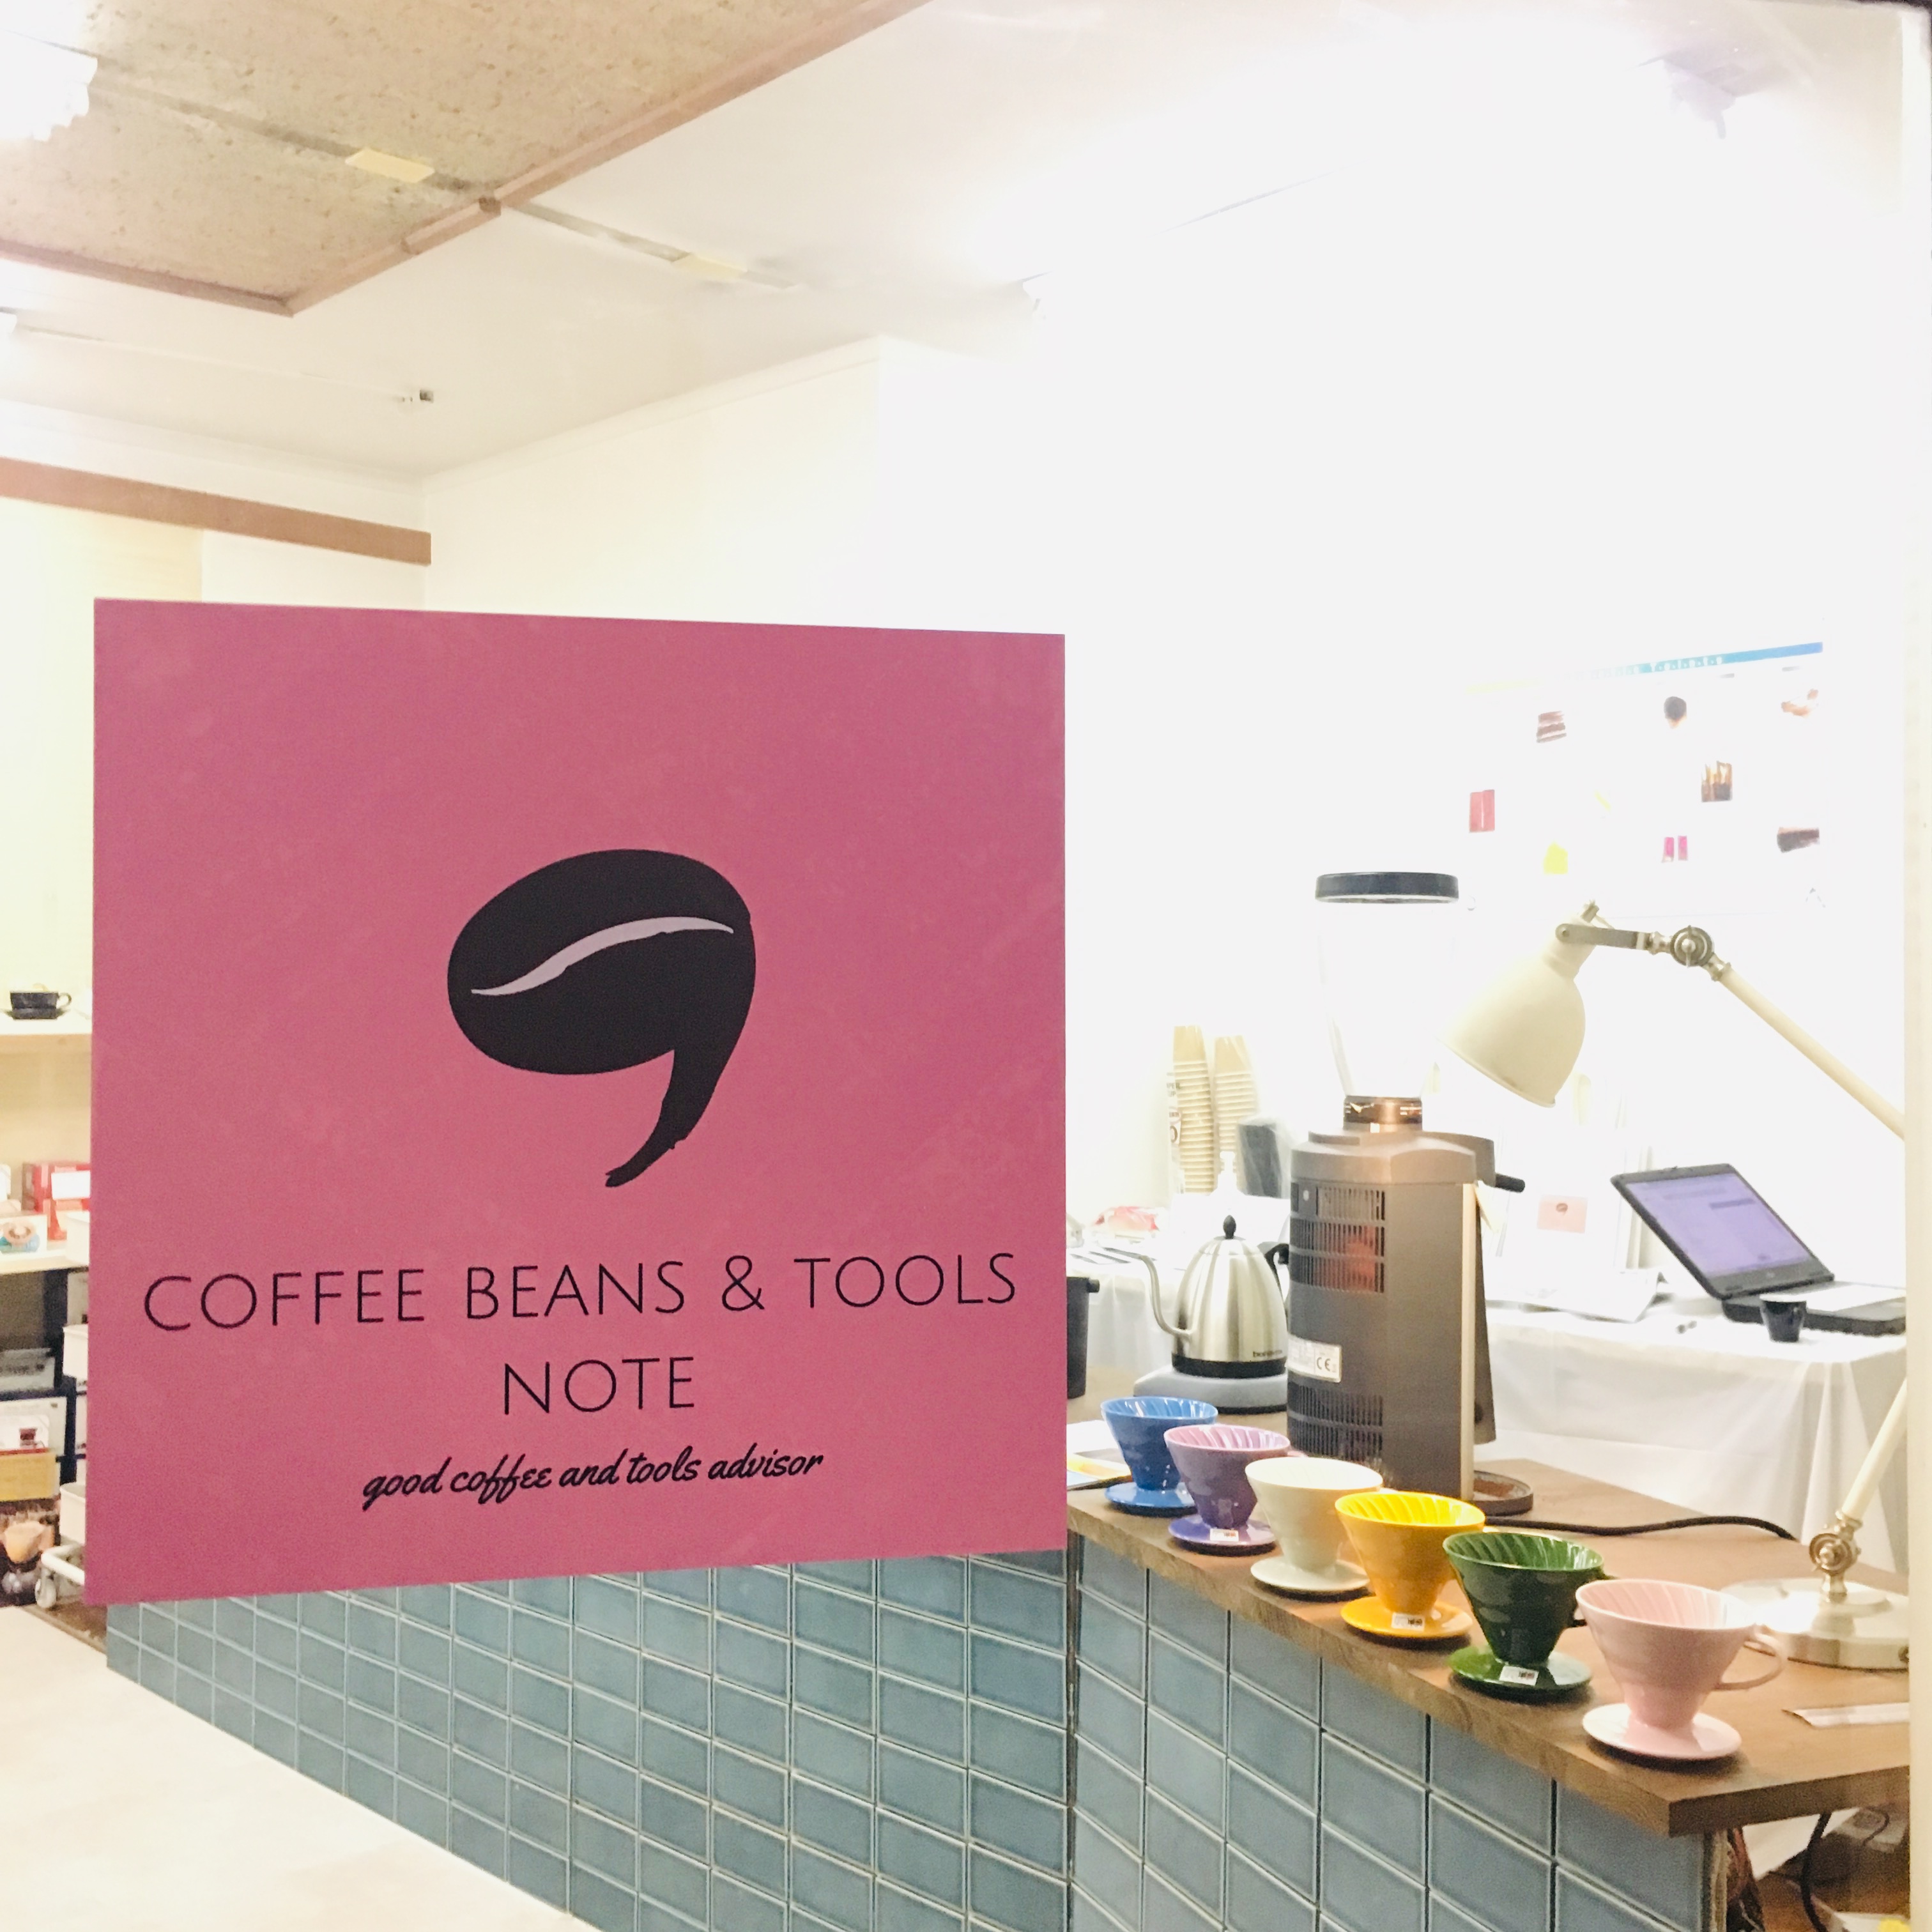 コーヒー器具のセレクトショップを1 11 土 に名古屋グランドオープン Note合同会社のプレスリリース